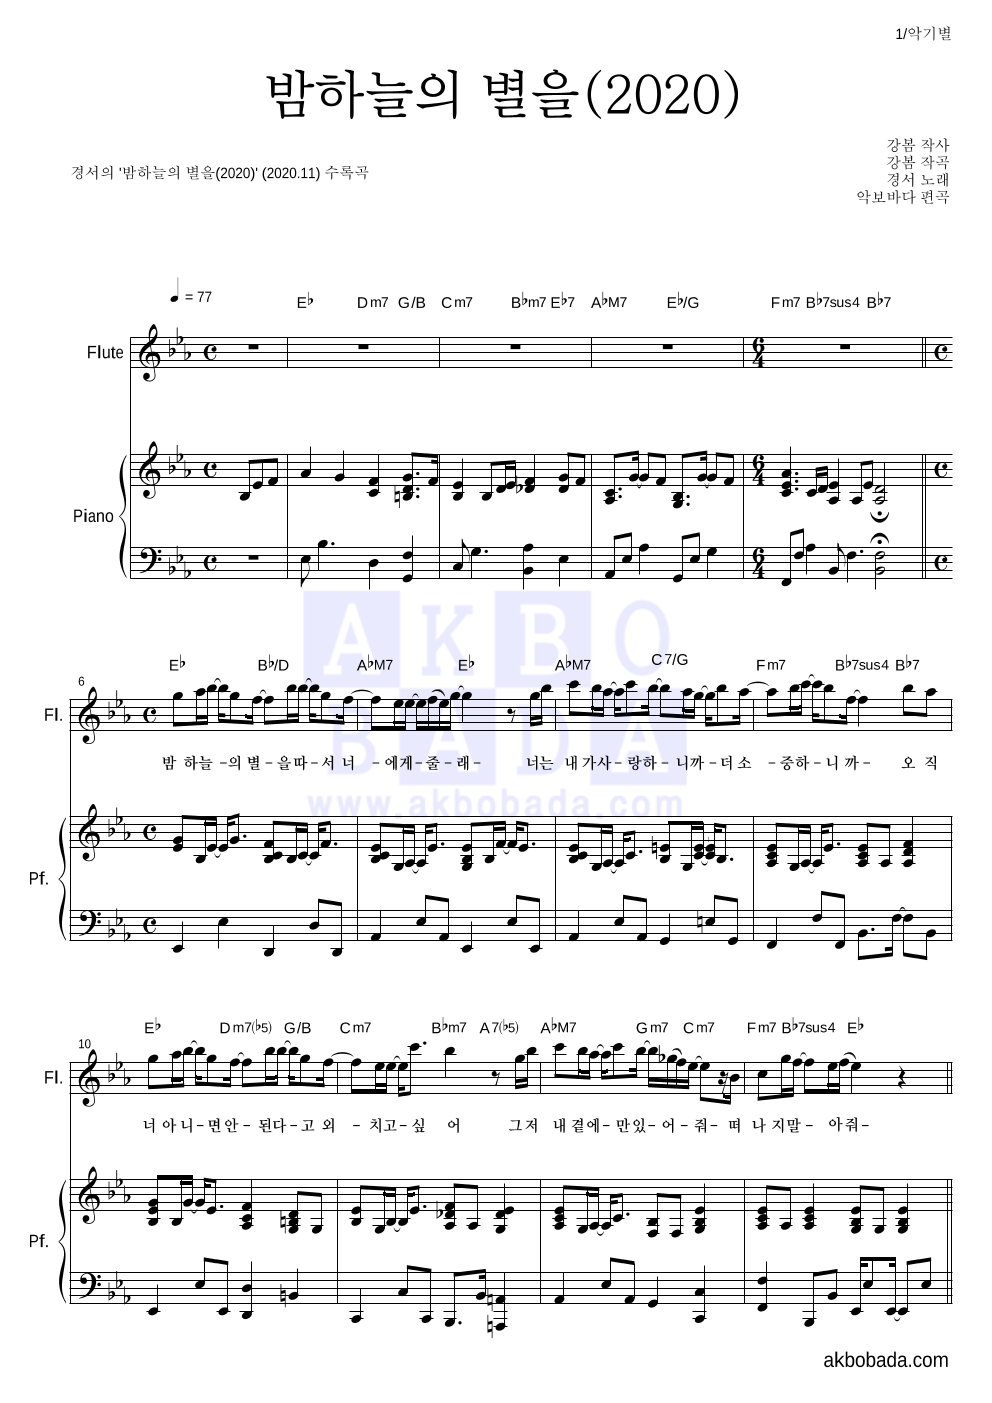 경서 - 밤하늘의 별을(2020) 플룻&피아노 악보 